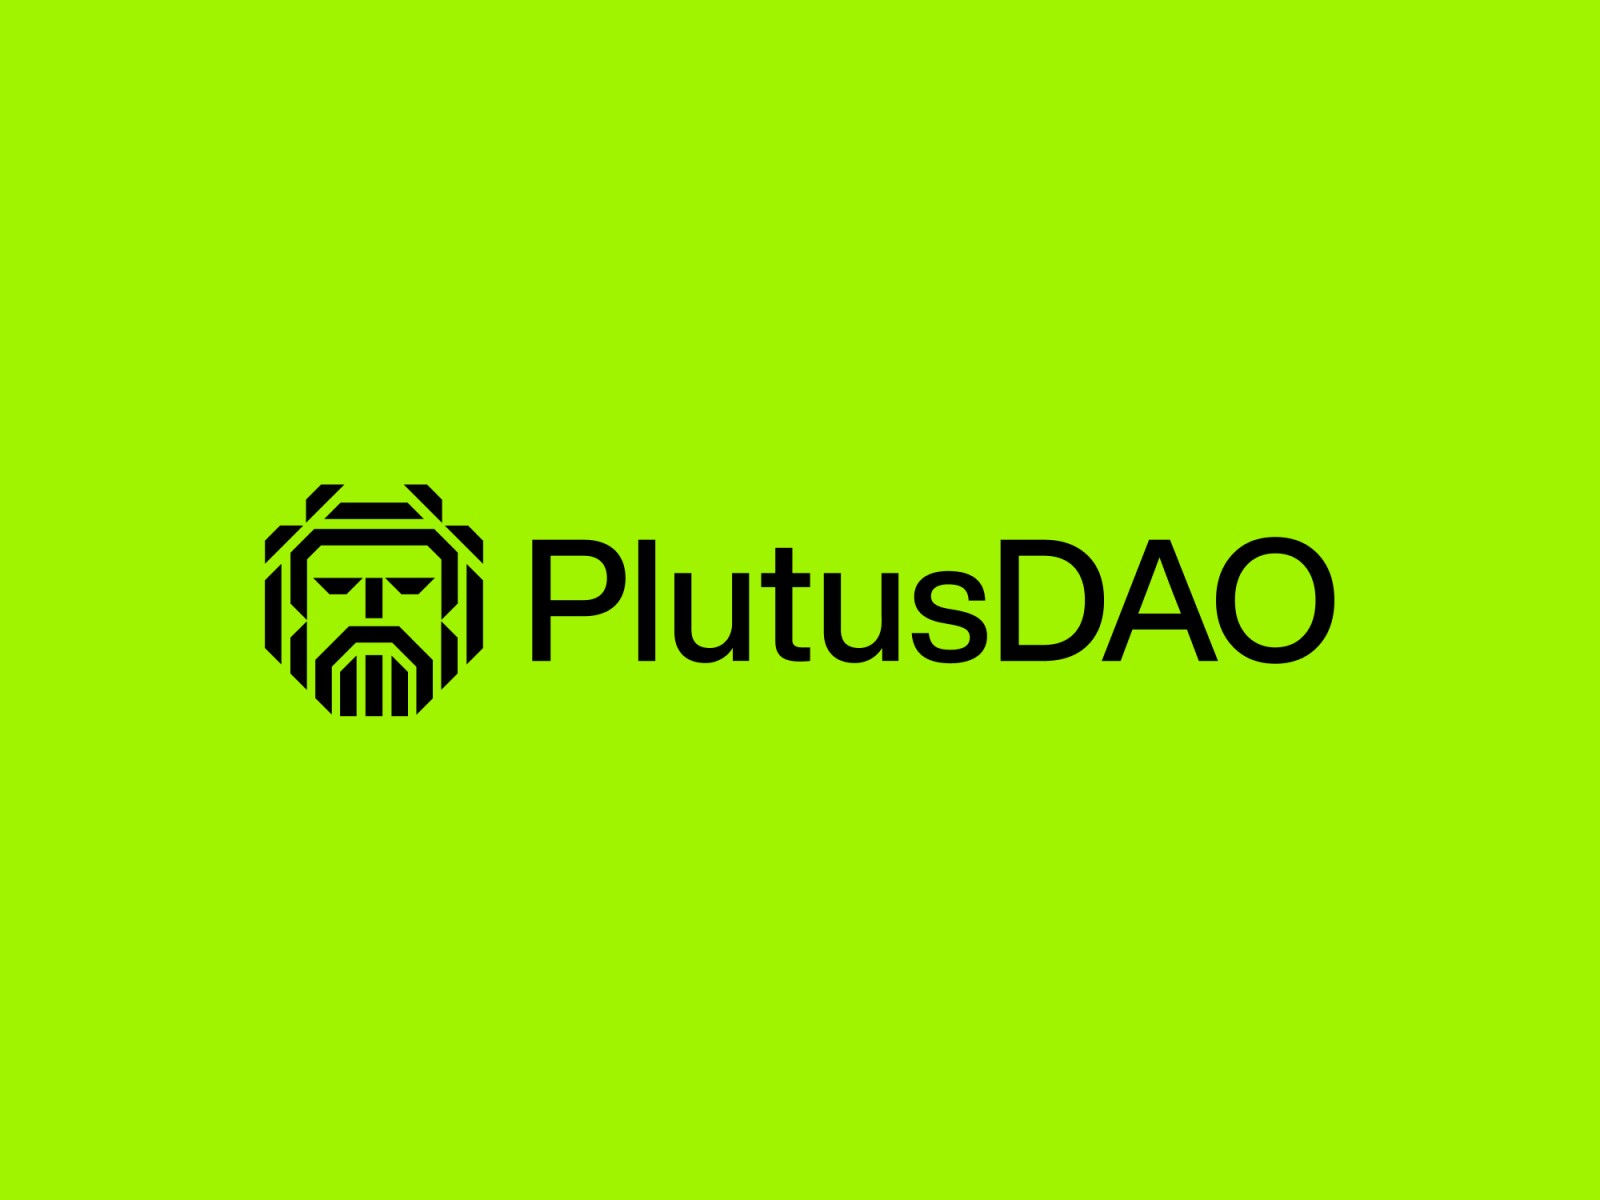 PlutusDAO Logo and Brand Identity Design